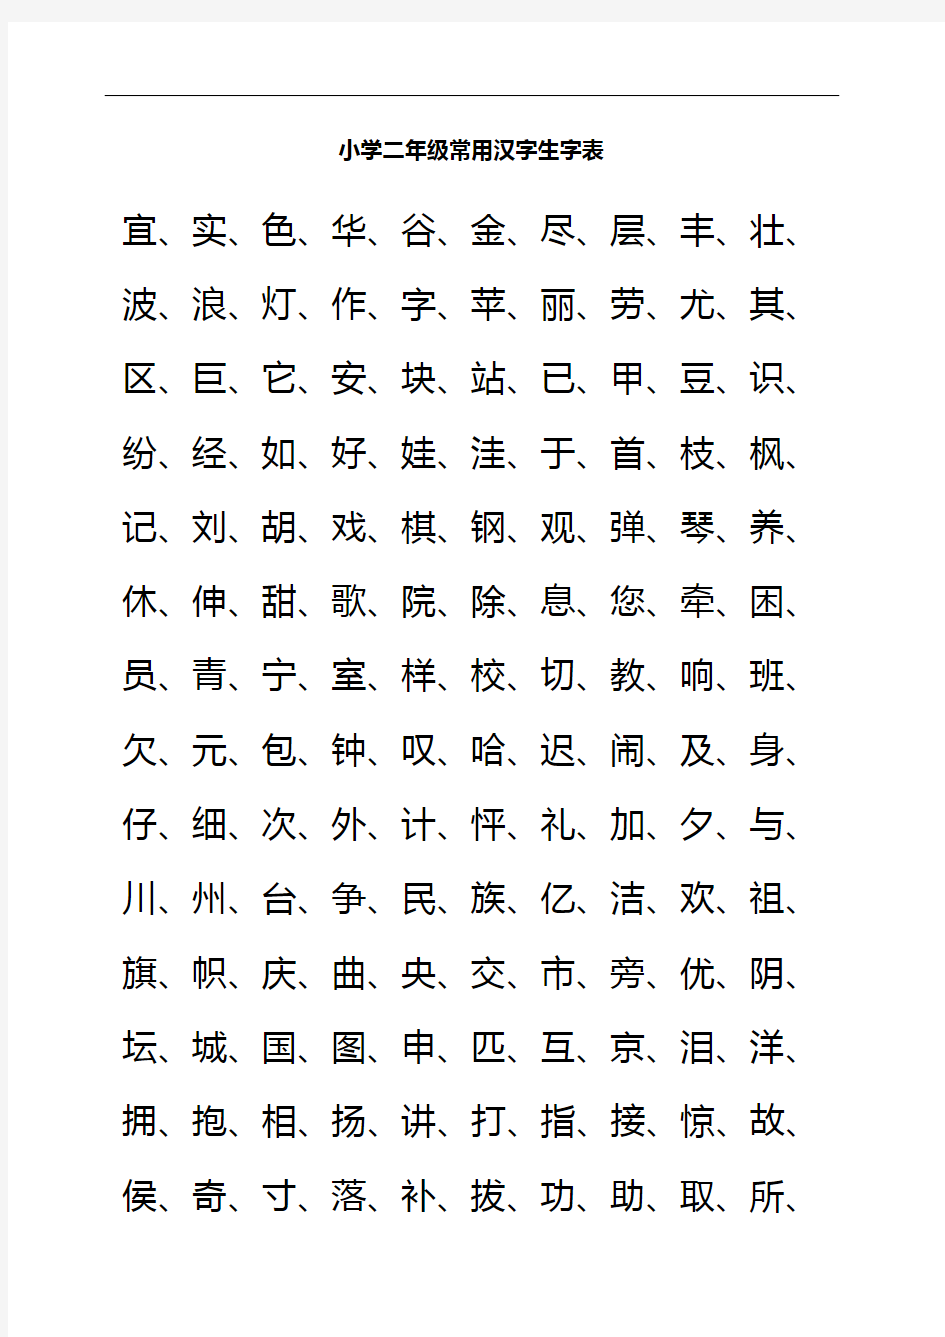 小学二年级常用汉字生字表